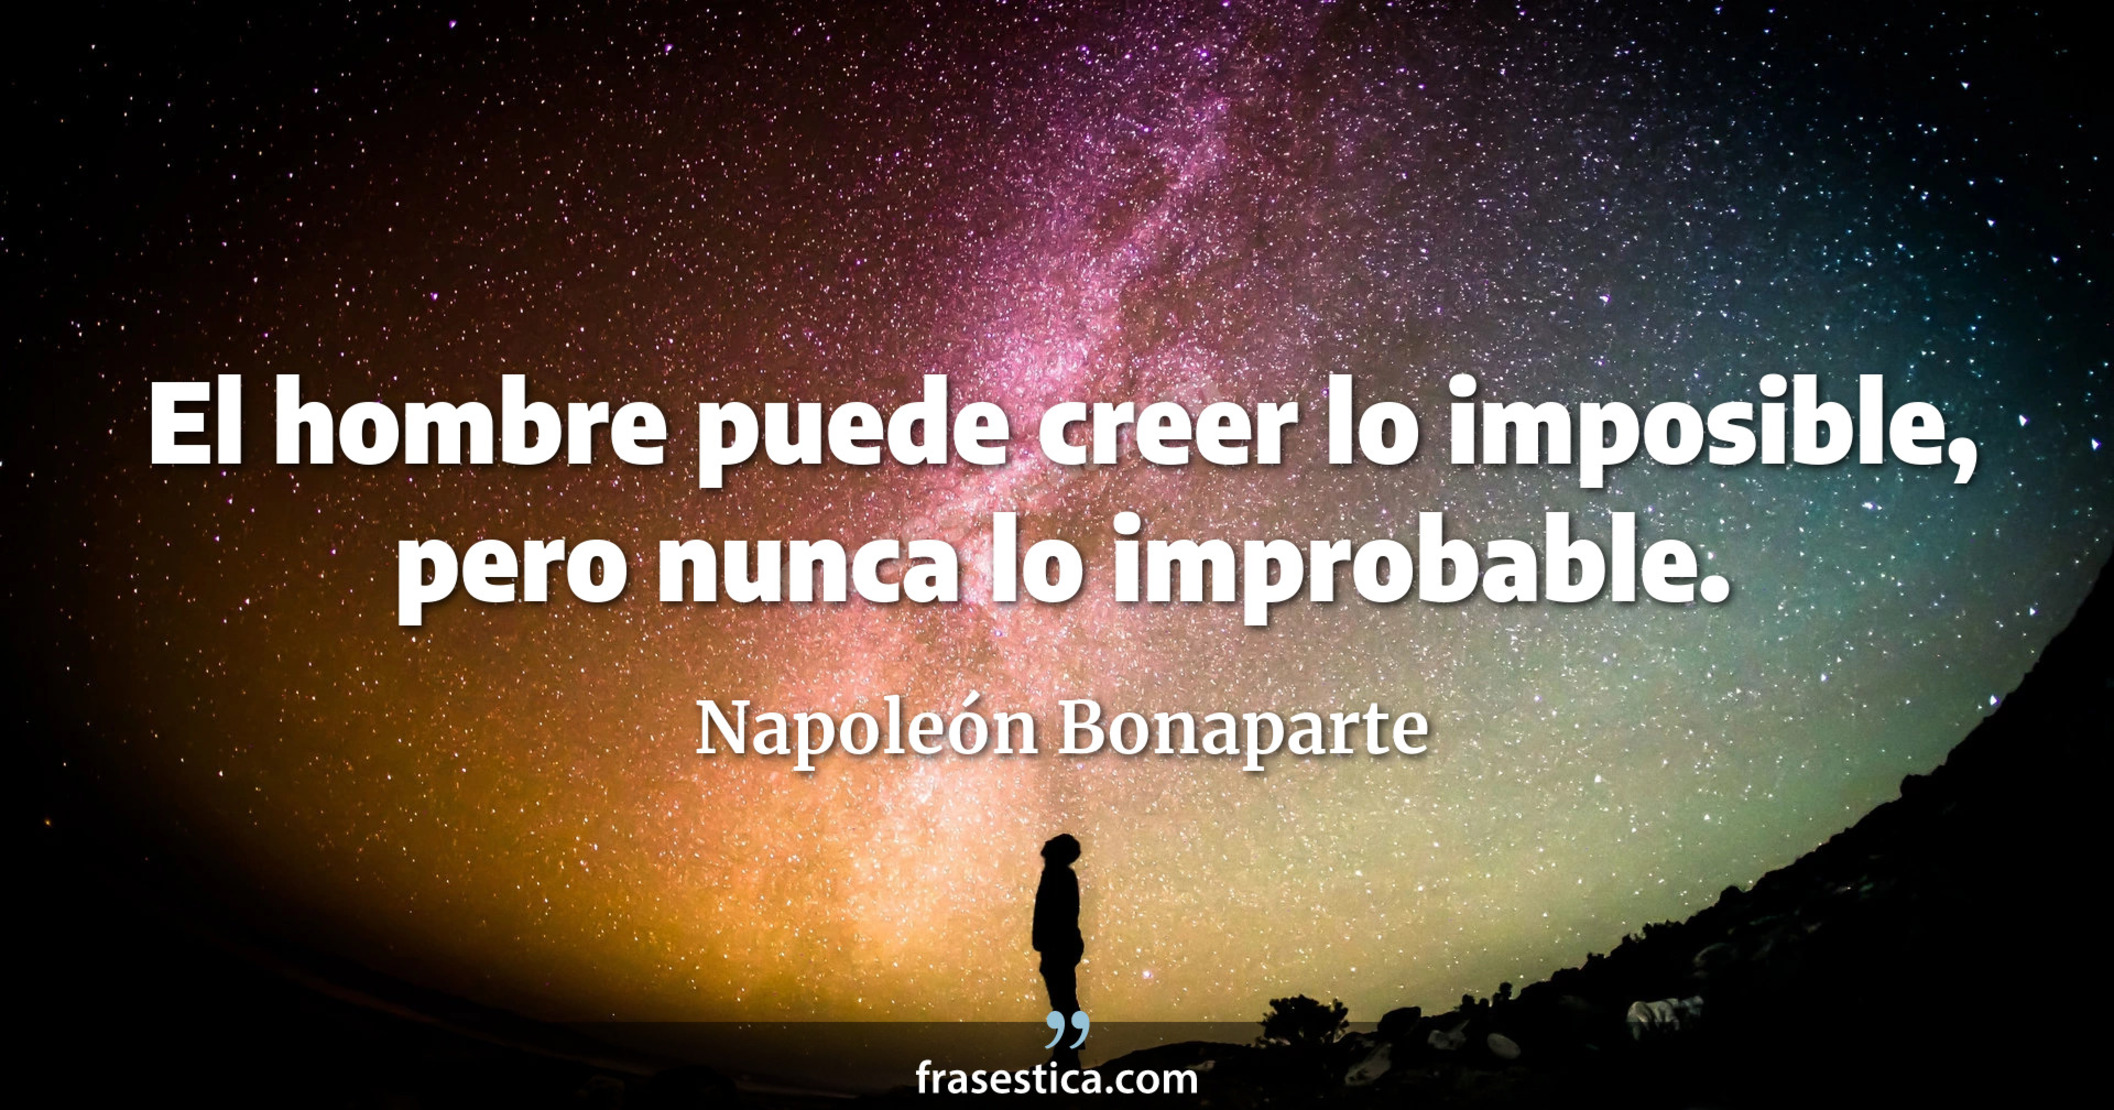 El hombre puede creer lo imposible, pero nunca lo improbable. - Napoleón Bonaparte